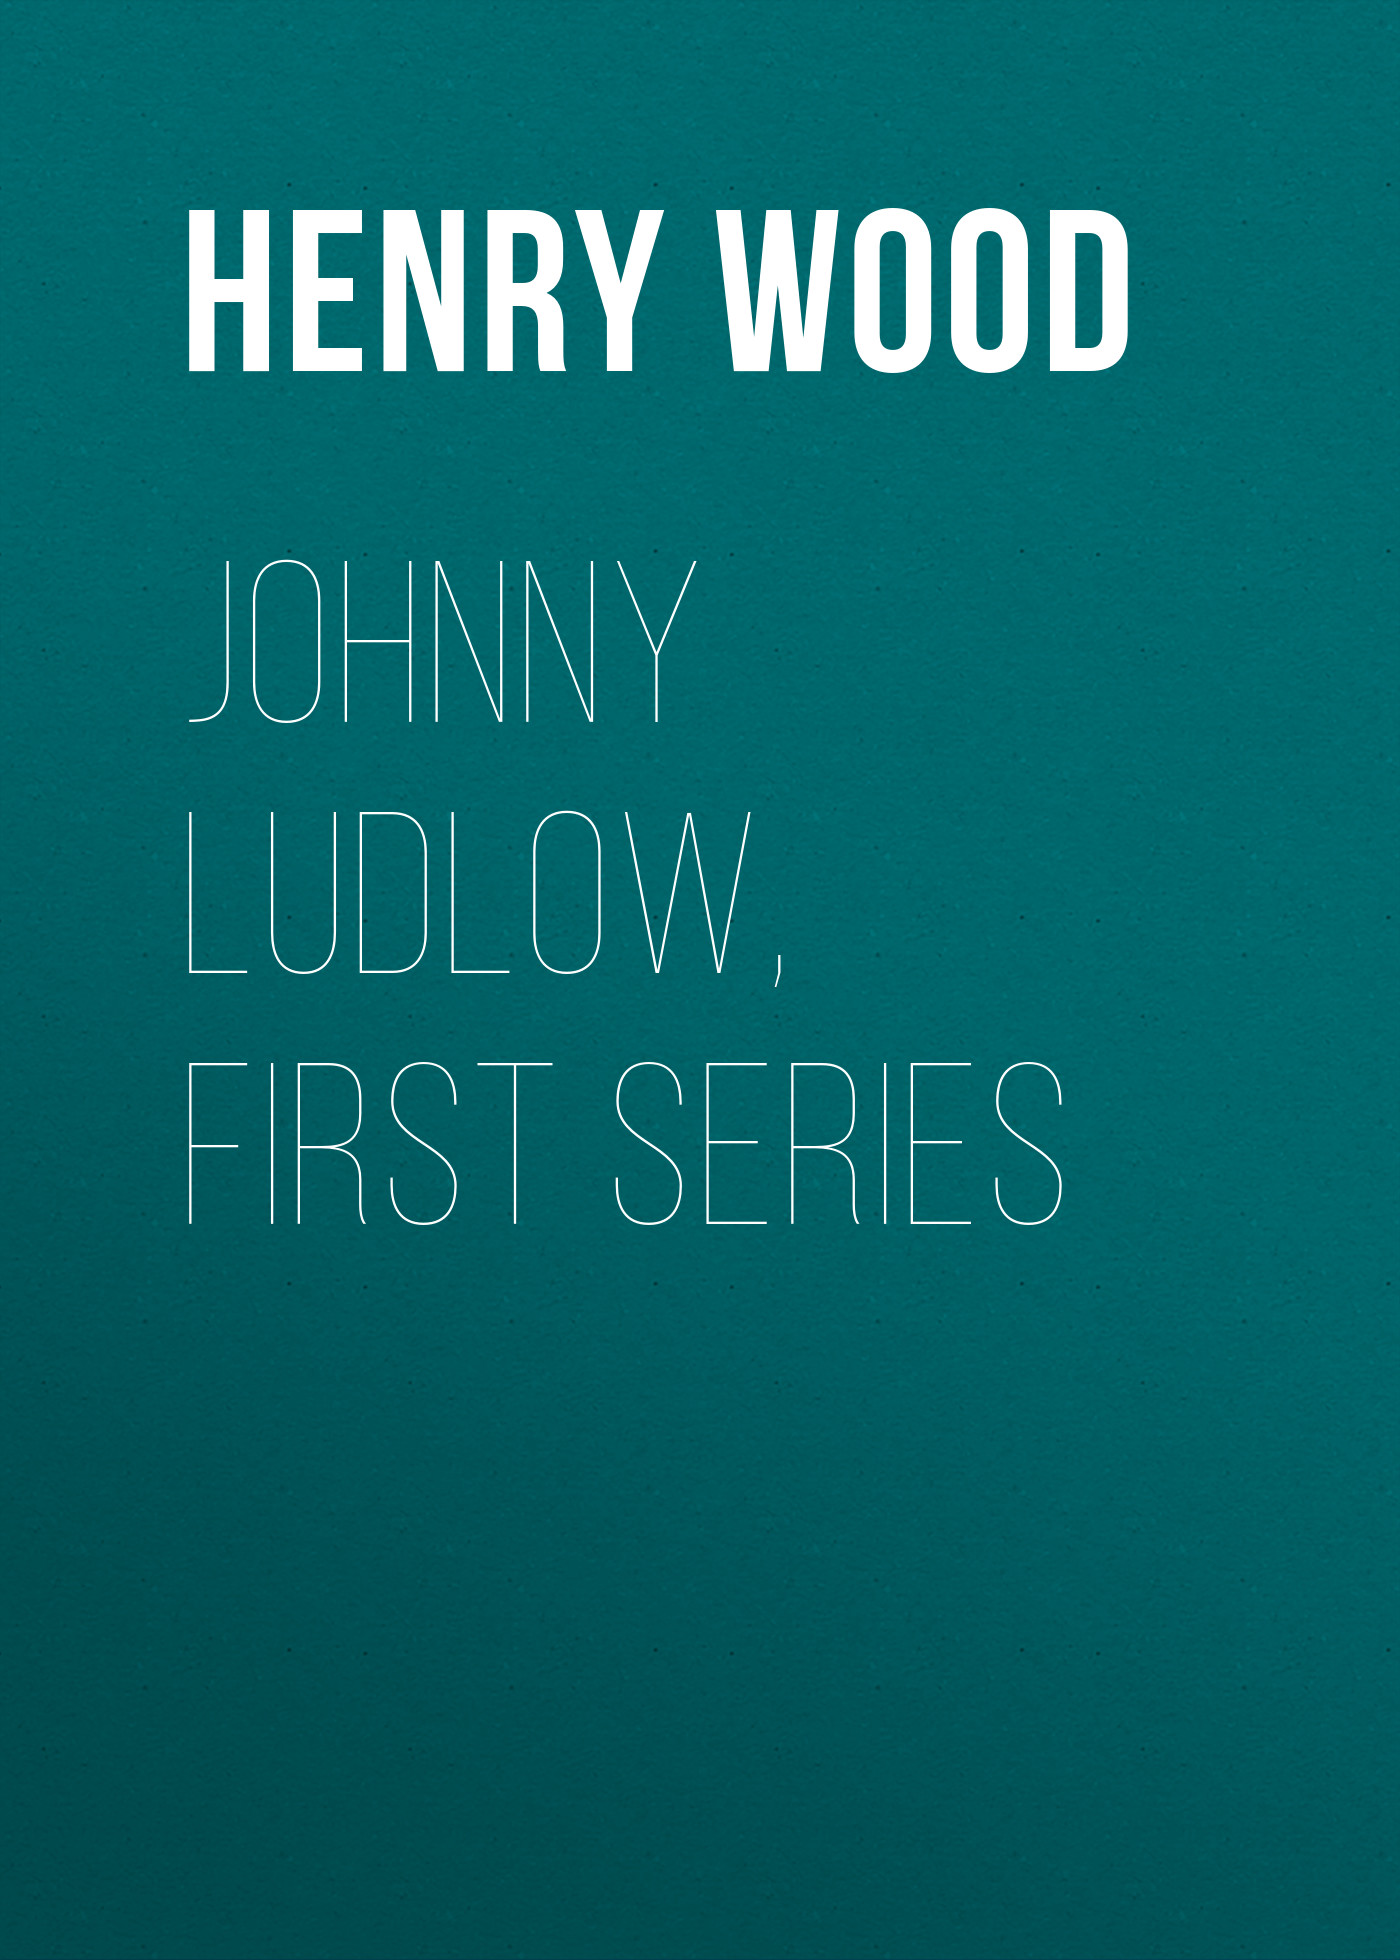 Книга Johnny Ludlow, First Series из серии , созданная Henry Wood, может относится к жанру Зарубежная классика, Литература 19 века, Зарубежная старинная литература. Стоимость электронной книги Johnny Ludlow, First Series с идентификатором 35007521 составляет 0 руб.